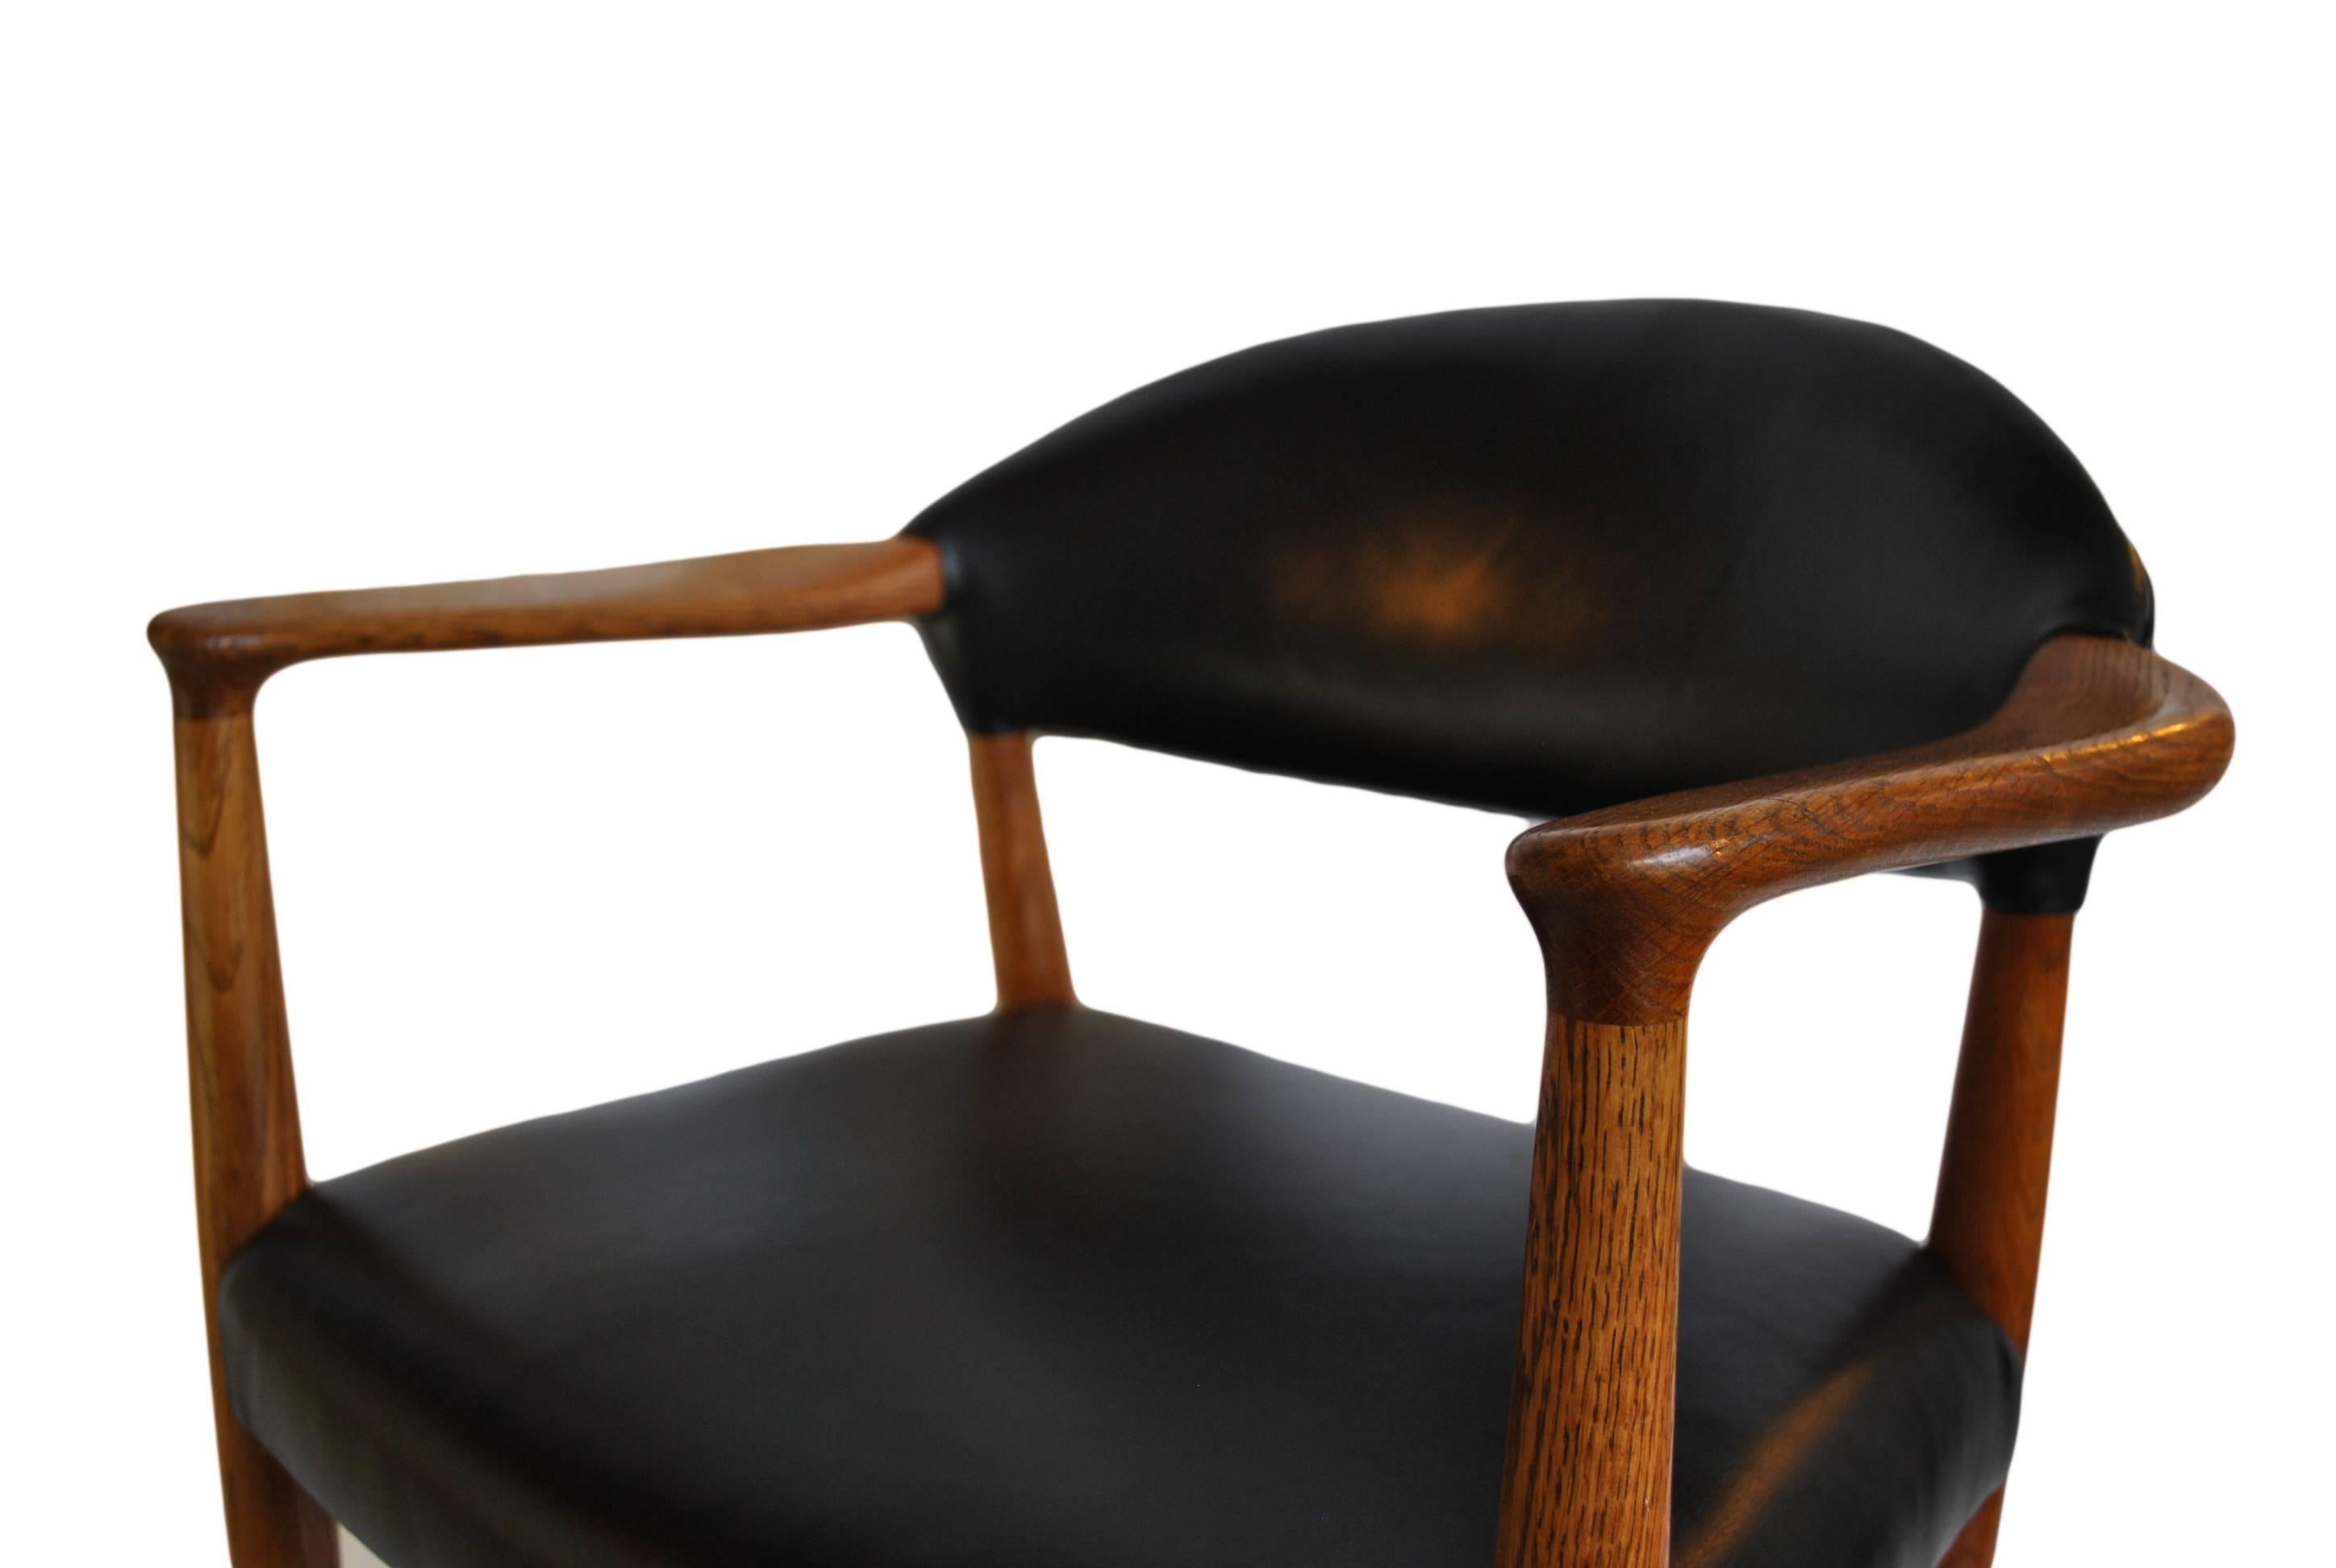 Polished European oak frame - completely re-upholstered in crest black  anthracite Italian leather. Fabulous chair design from Kurt Olsen, Denmark, circa 1955.